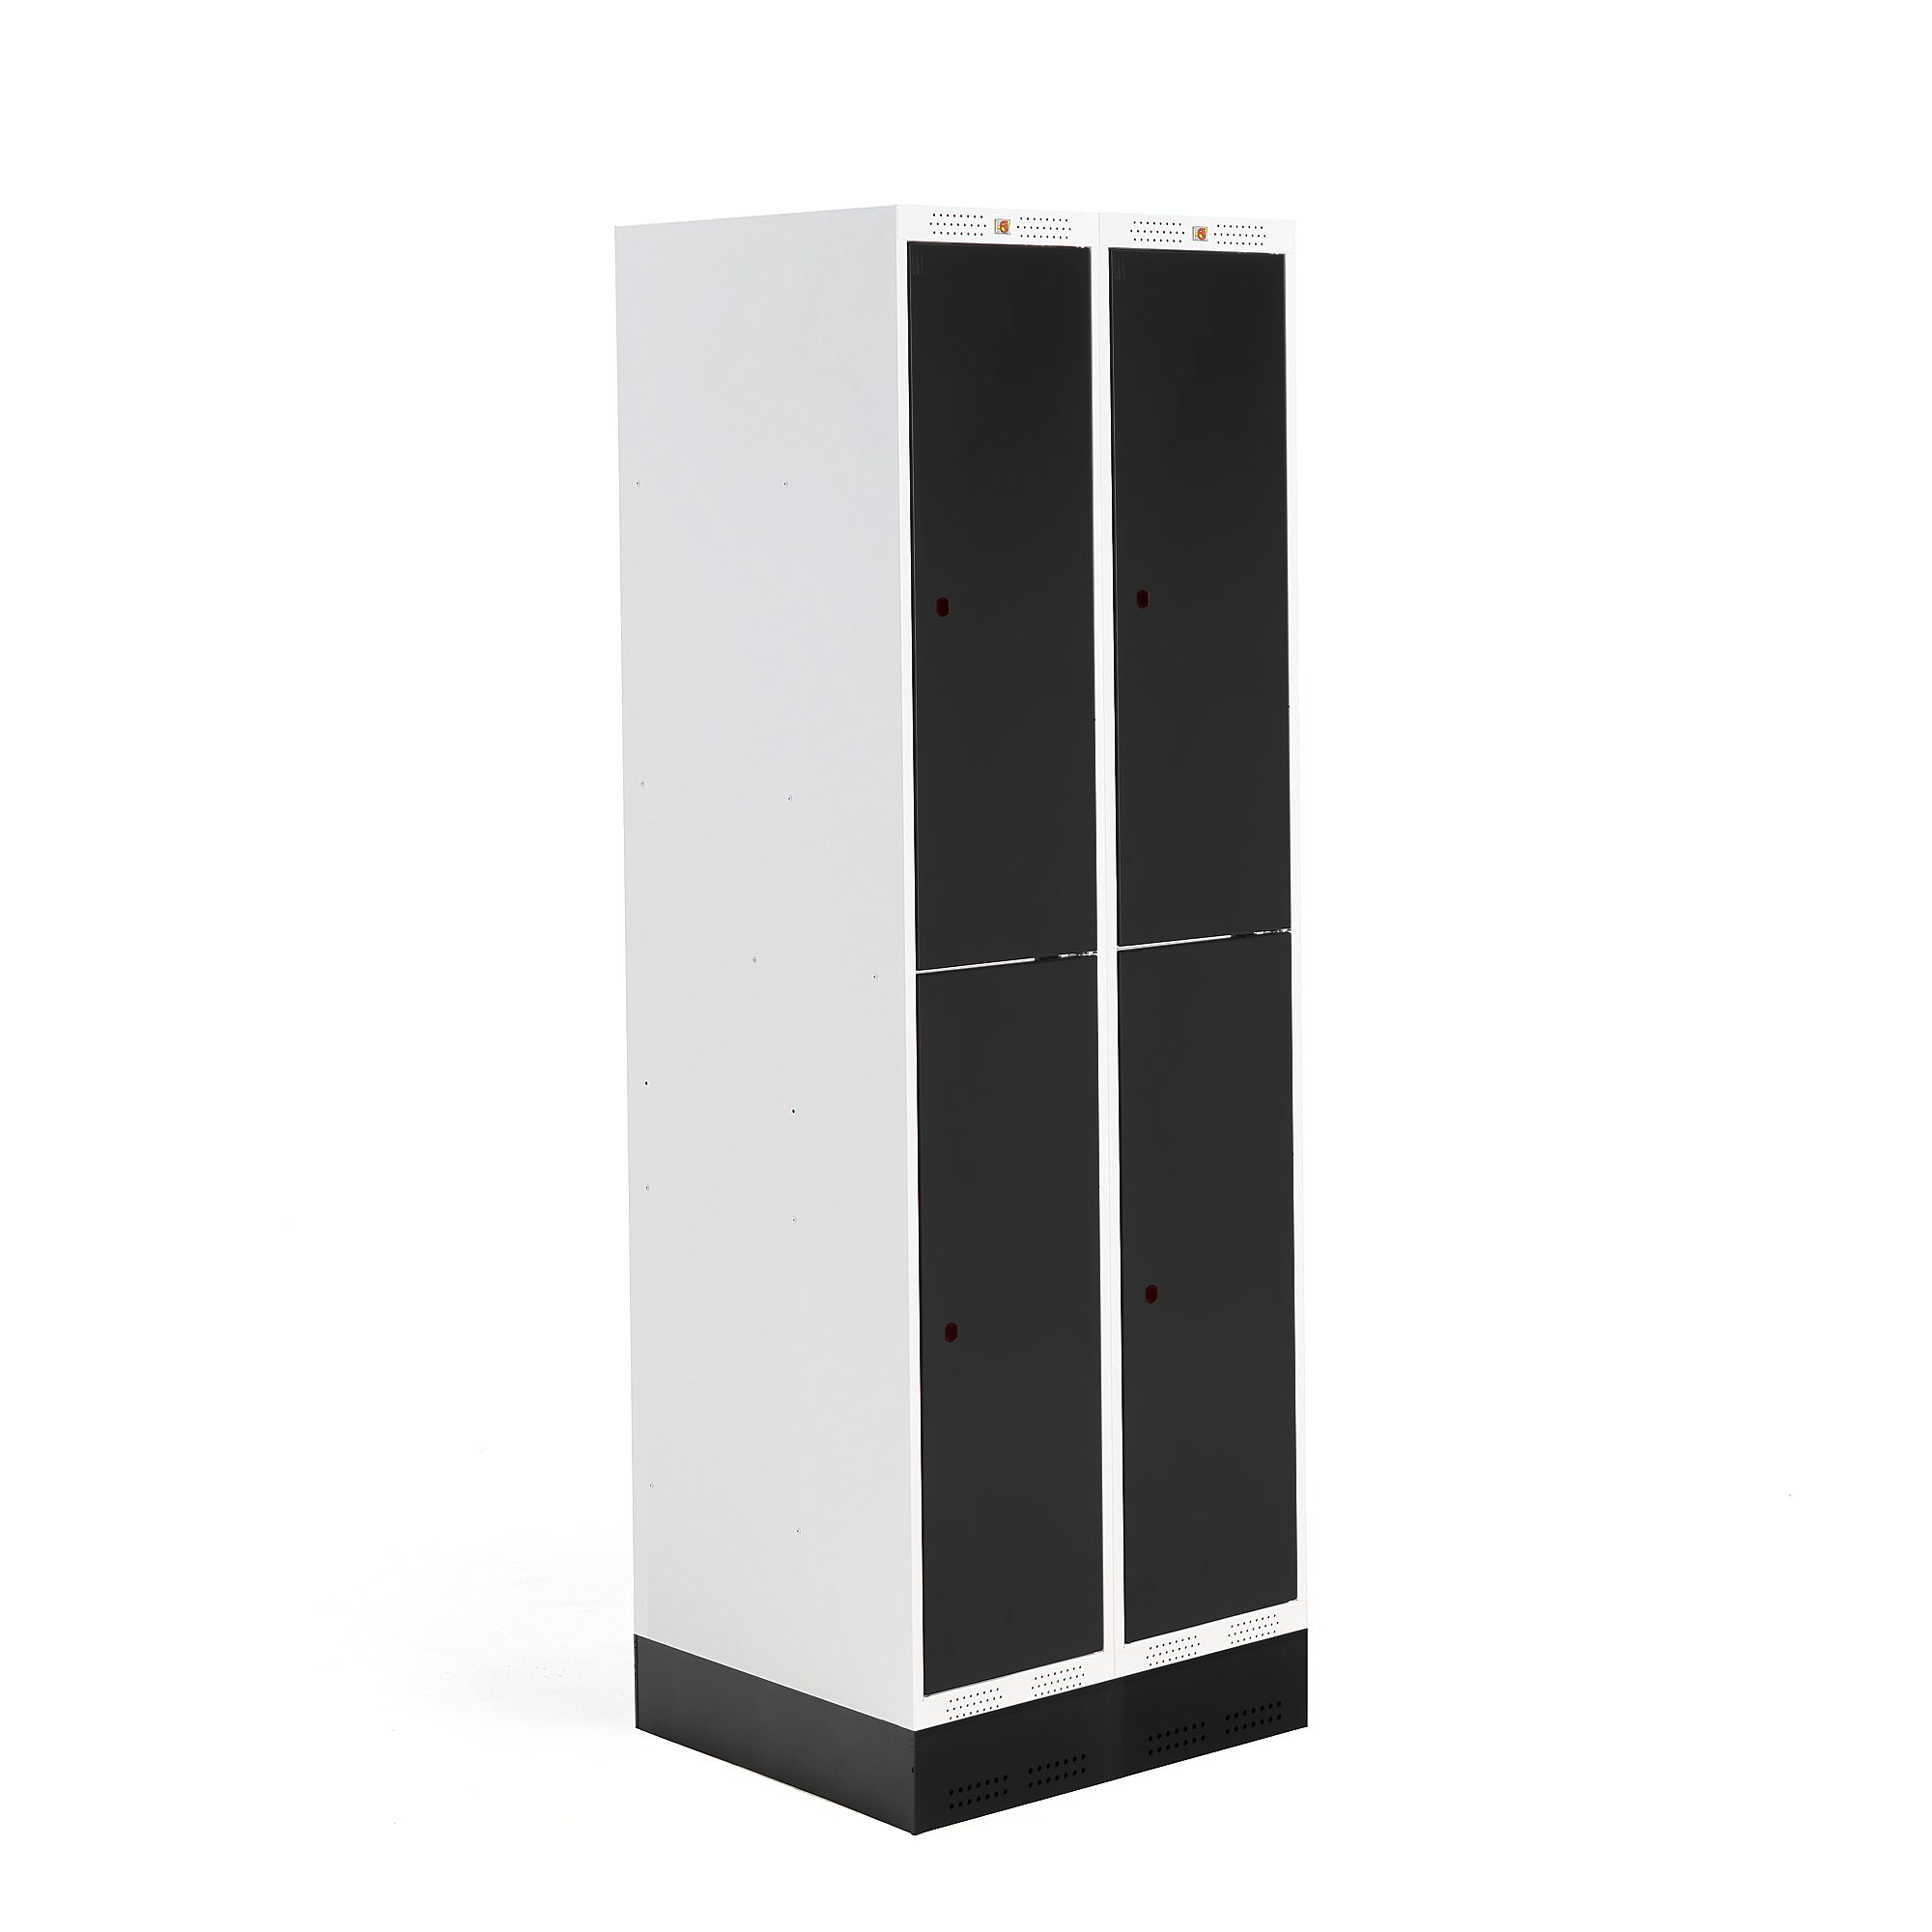 E-shop Školská šatňová skrinka ROZ, 2 sekcie, 4 dvere, 1890x600x550 mm, čierna, so soklom